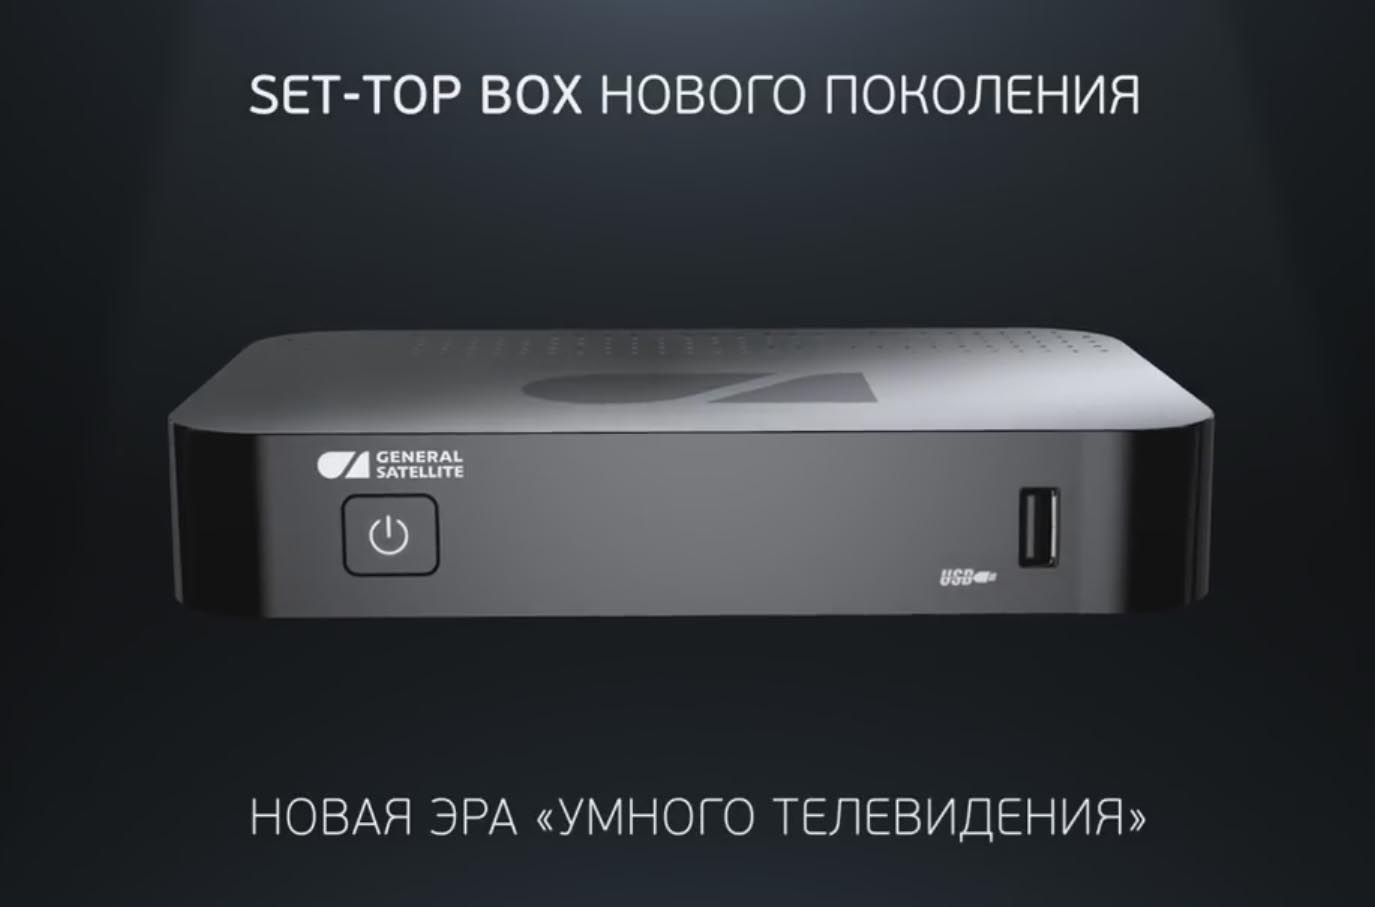 GS Group представляет первую ТВ-приставку на базе Android, разработанную и произведенную в России